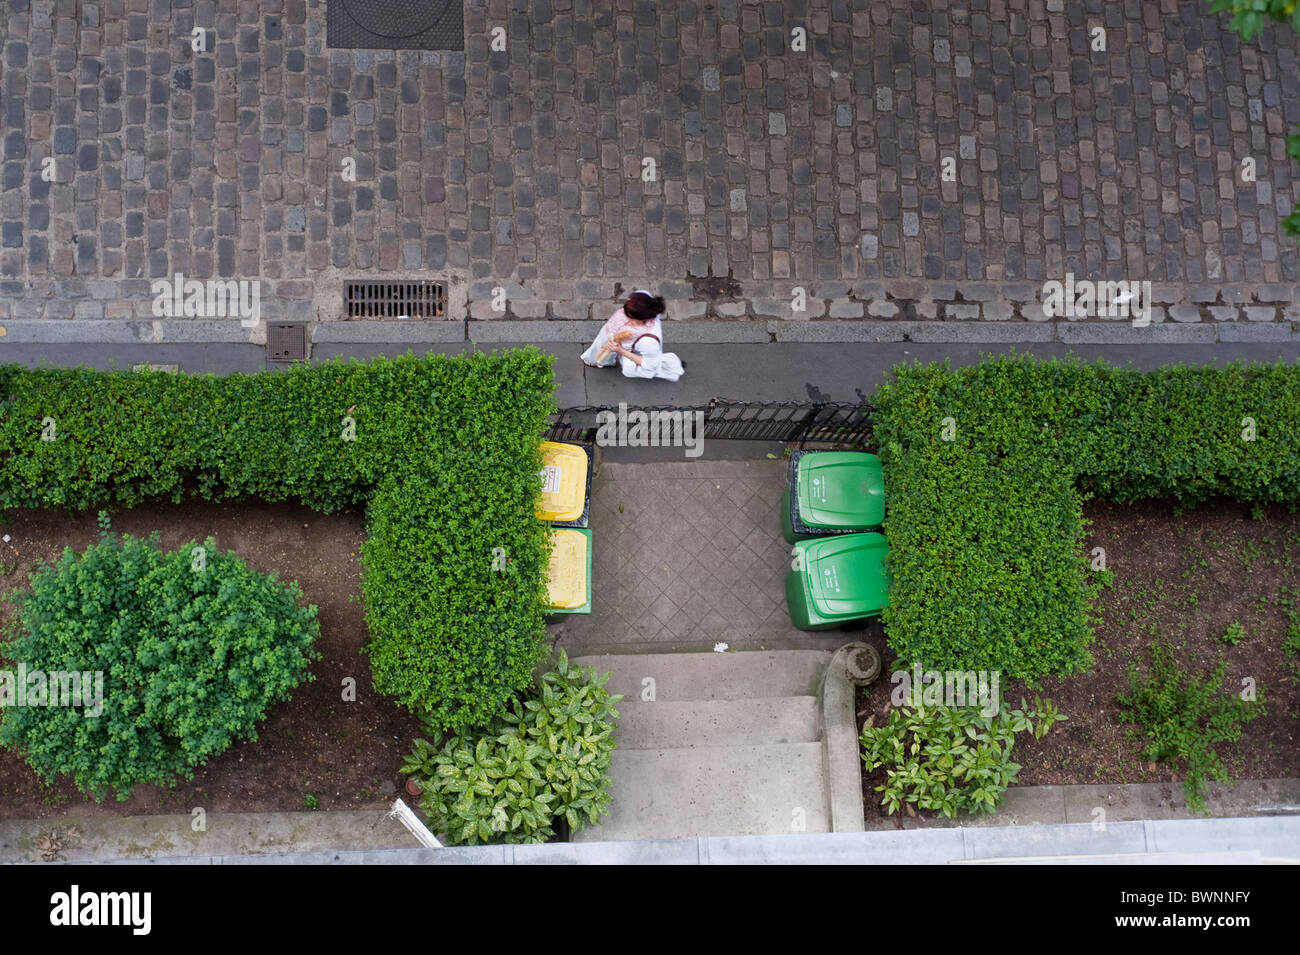 Paris, France, Jardins urbains poubelles en plastique Wheely en face de l'immeuble d'appartements, scène de rue aérienne, jardin à vélo Banque D'Images